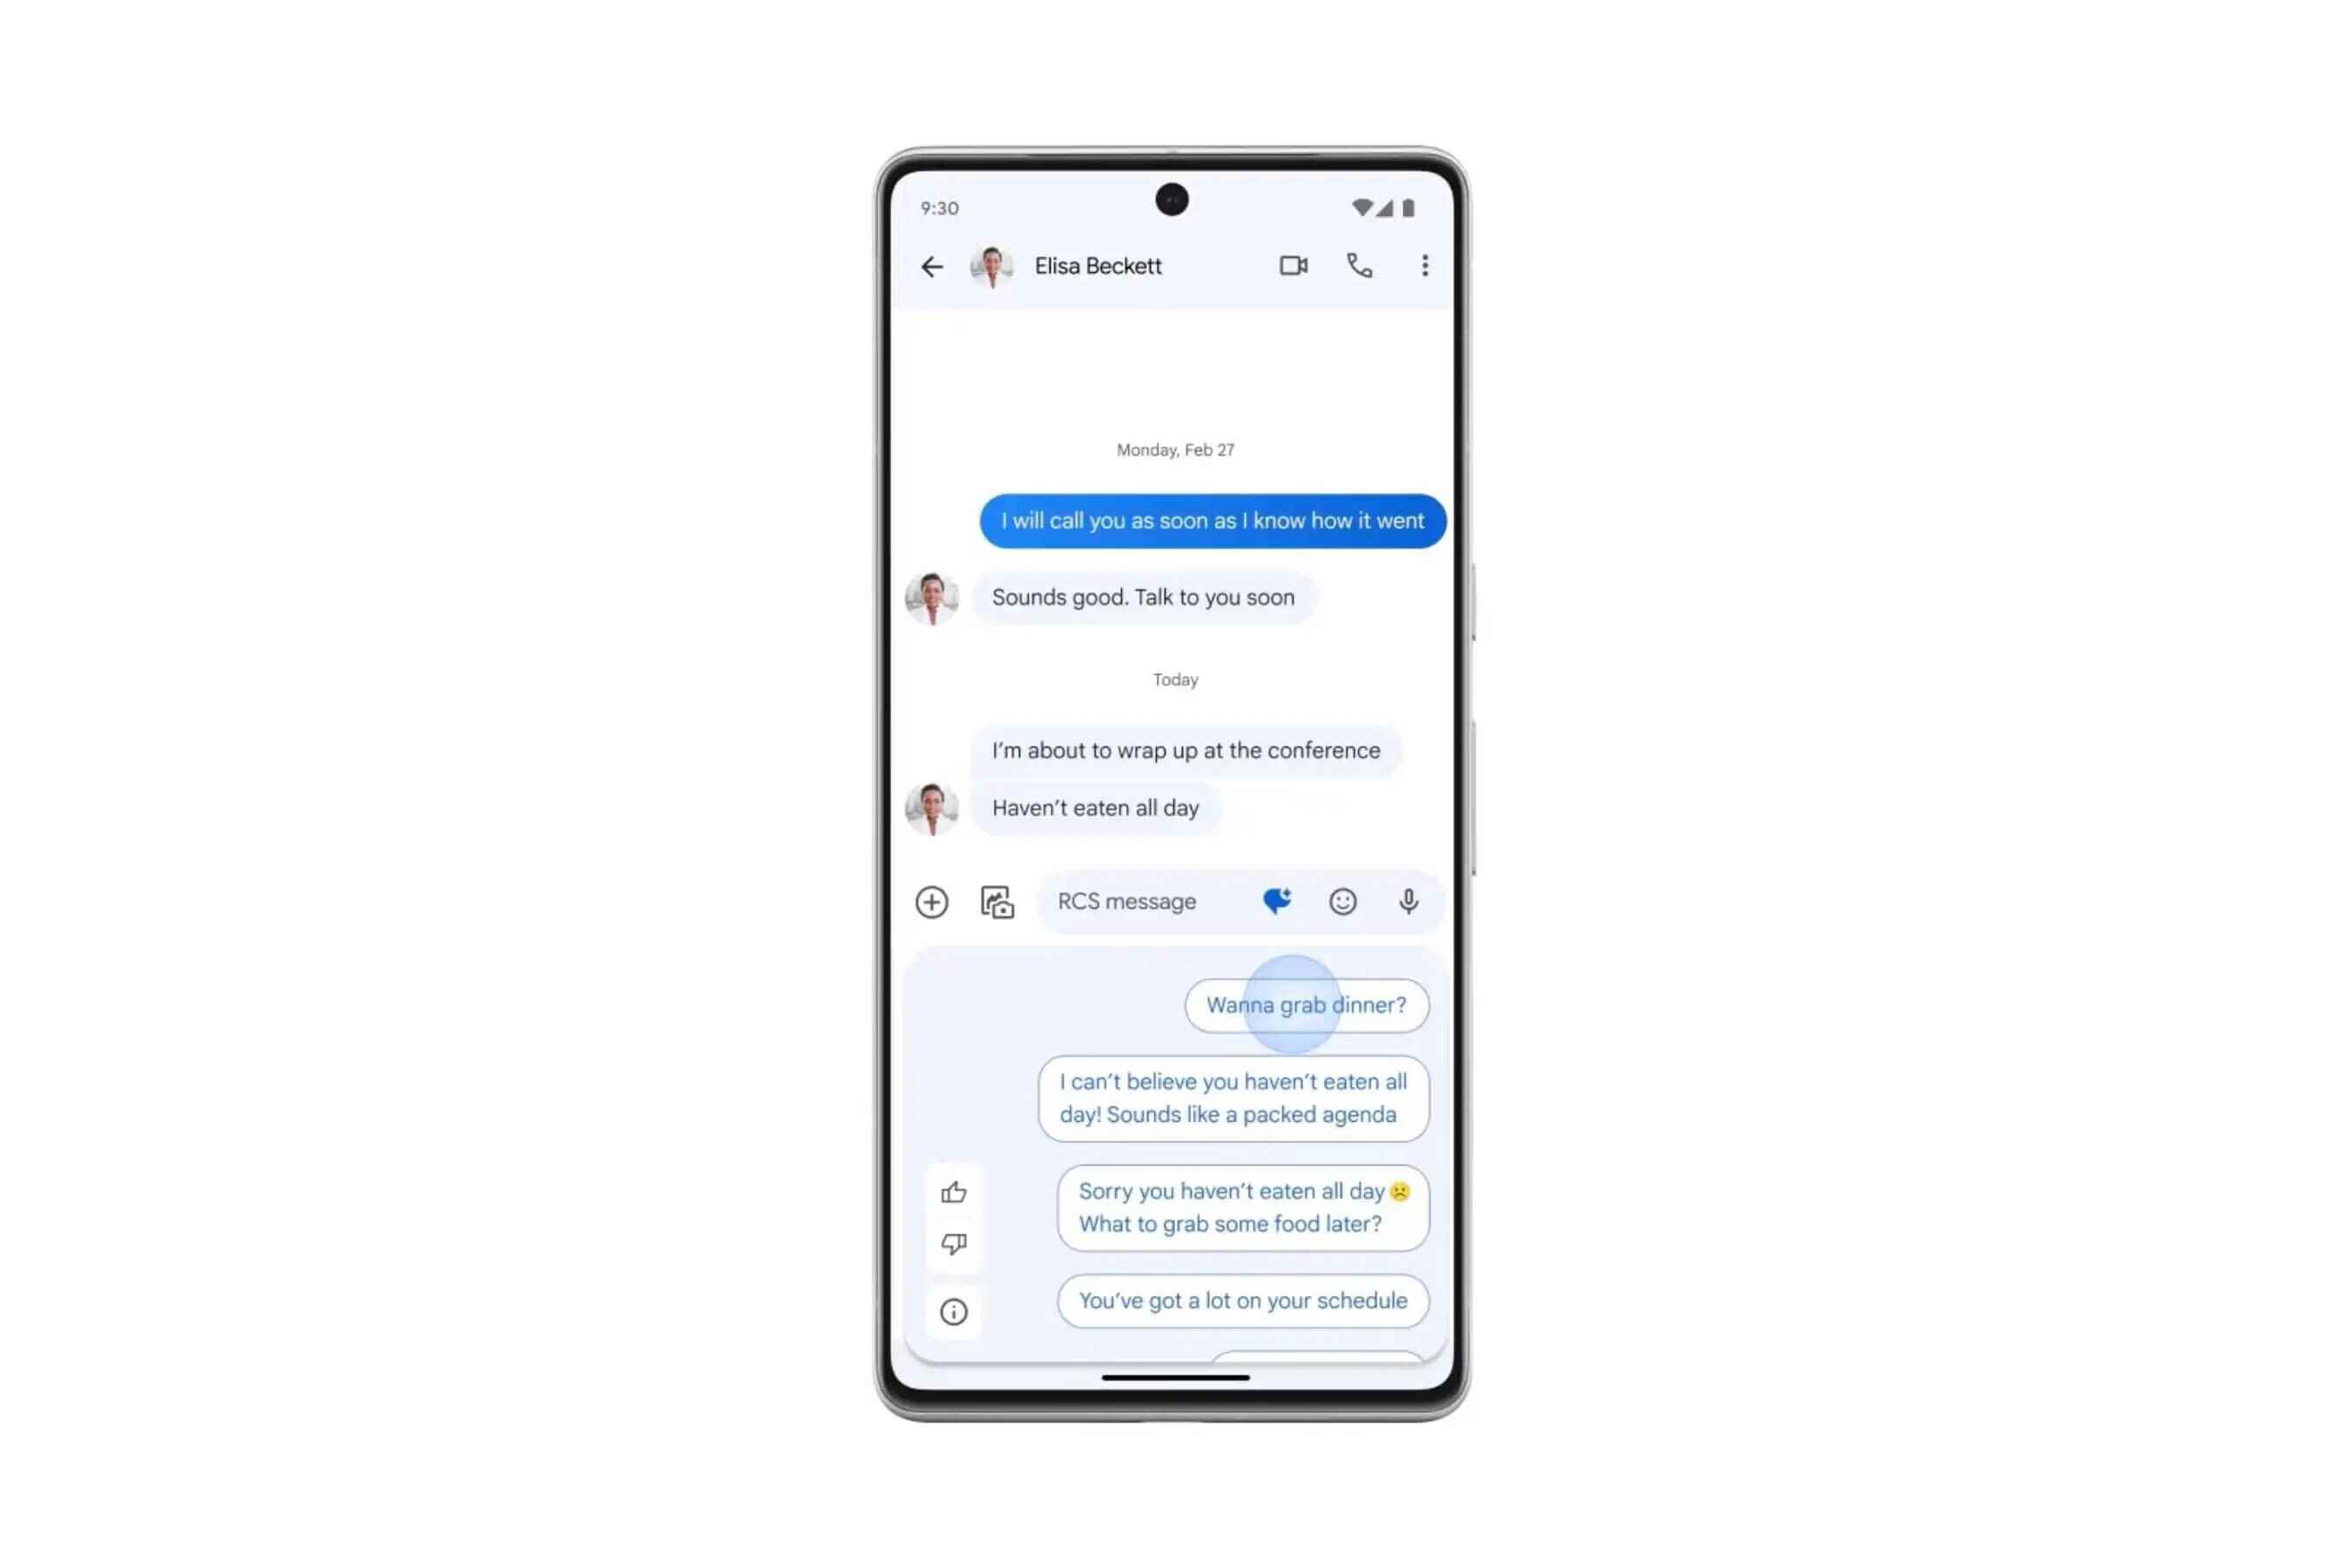 Magic Compose, önceki mesajlarınıza göre otomatik olarak yanıtlar oluşturur - Tembel Android metin kullanıcılarının artık konuşmalara anlamlı bir şekilde katkıda bulunmak için daha az nedeni var